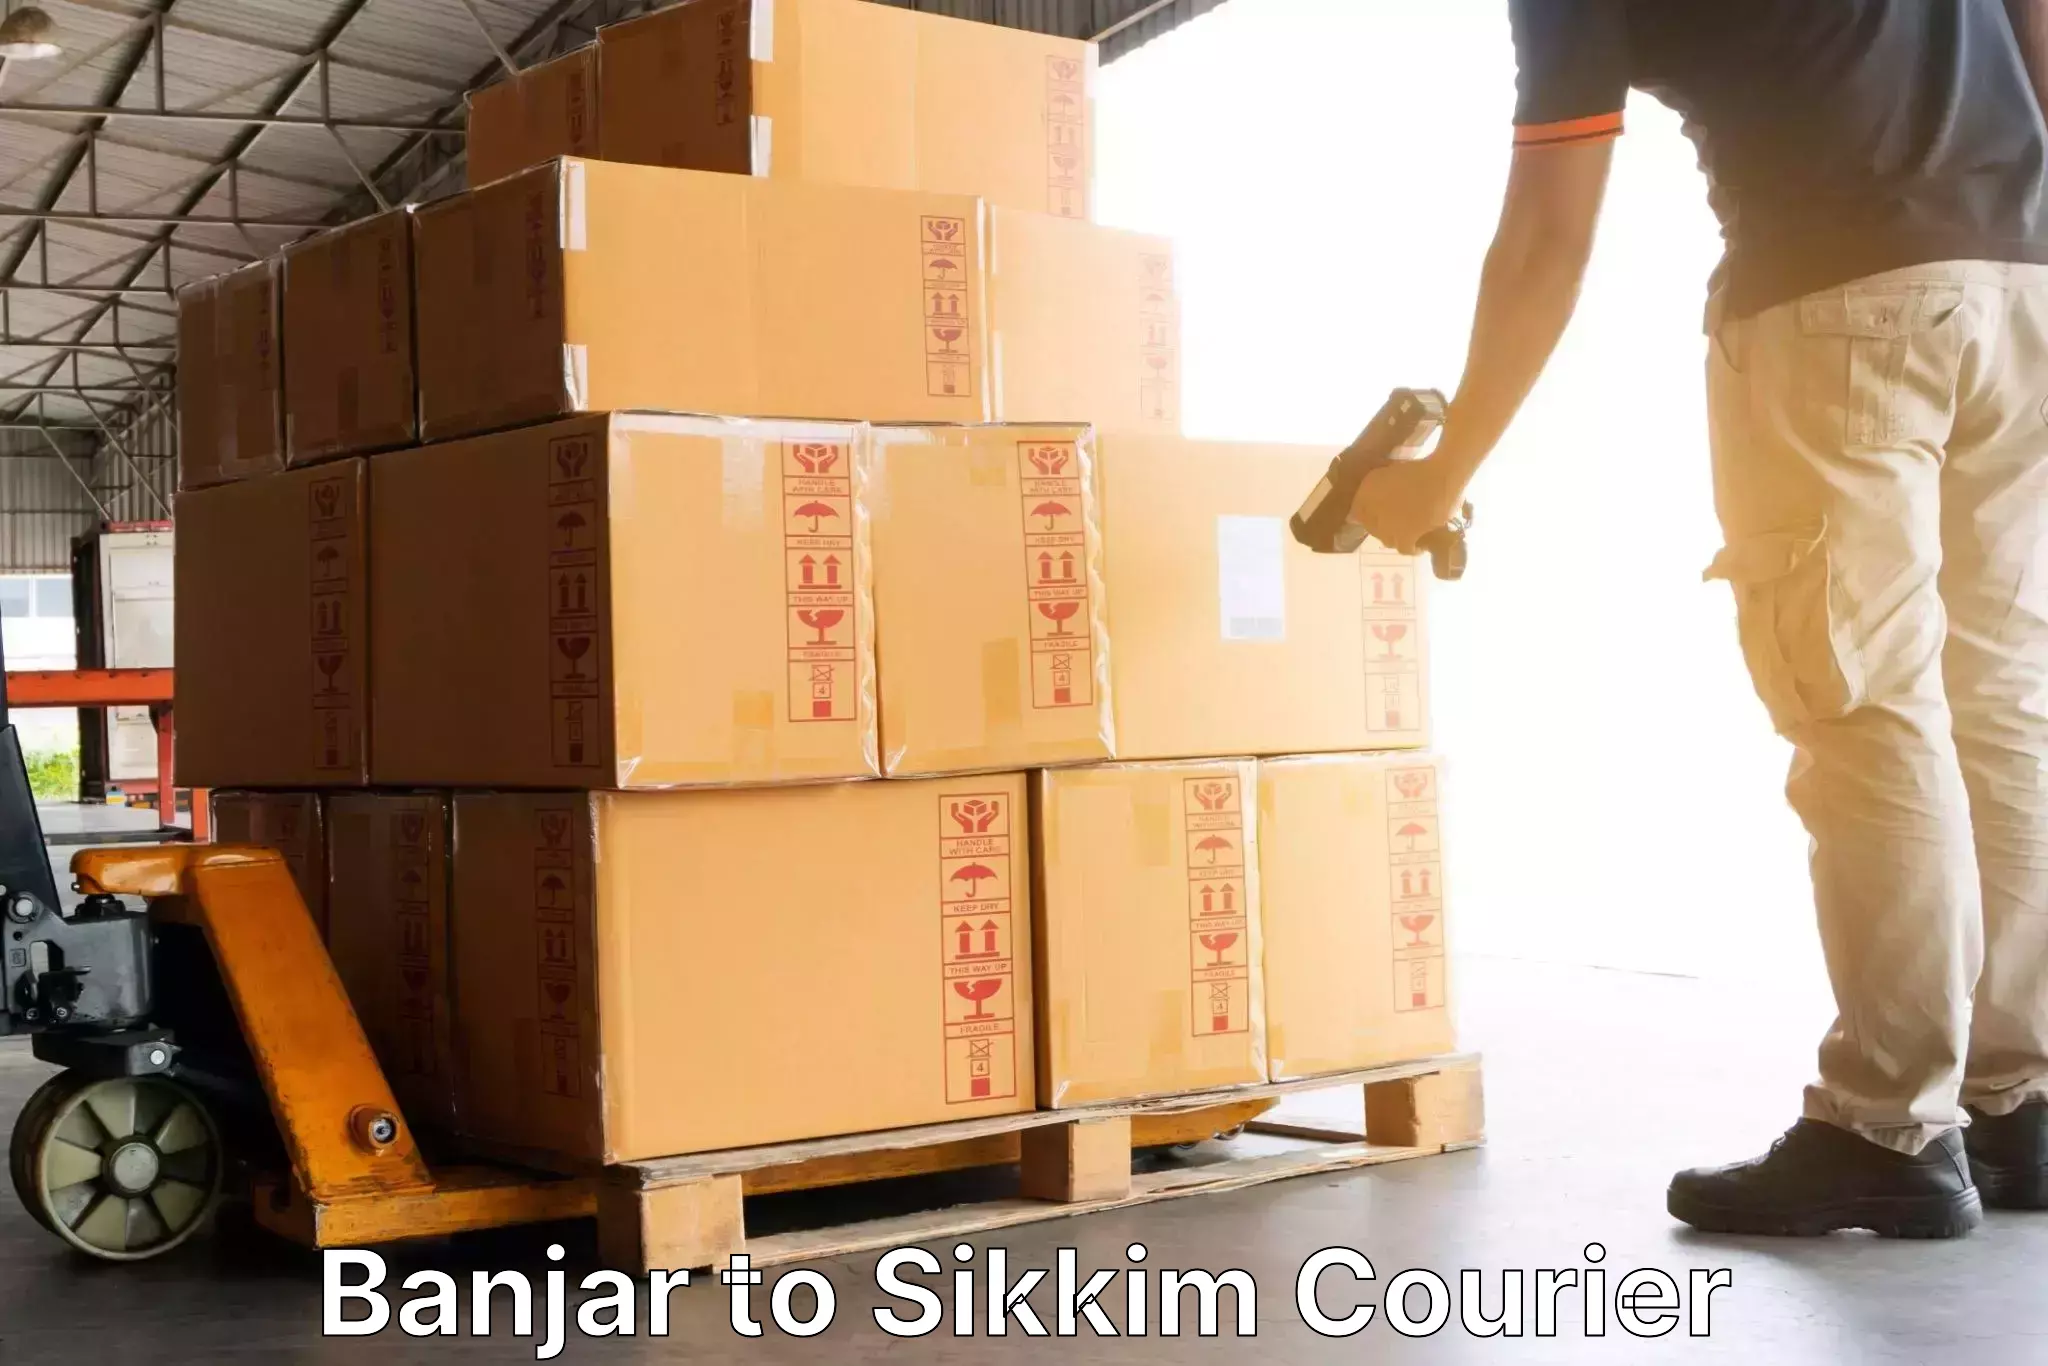 Door-to-door freight service Banjar to North Sikkim